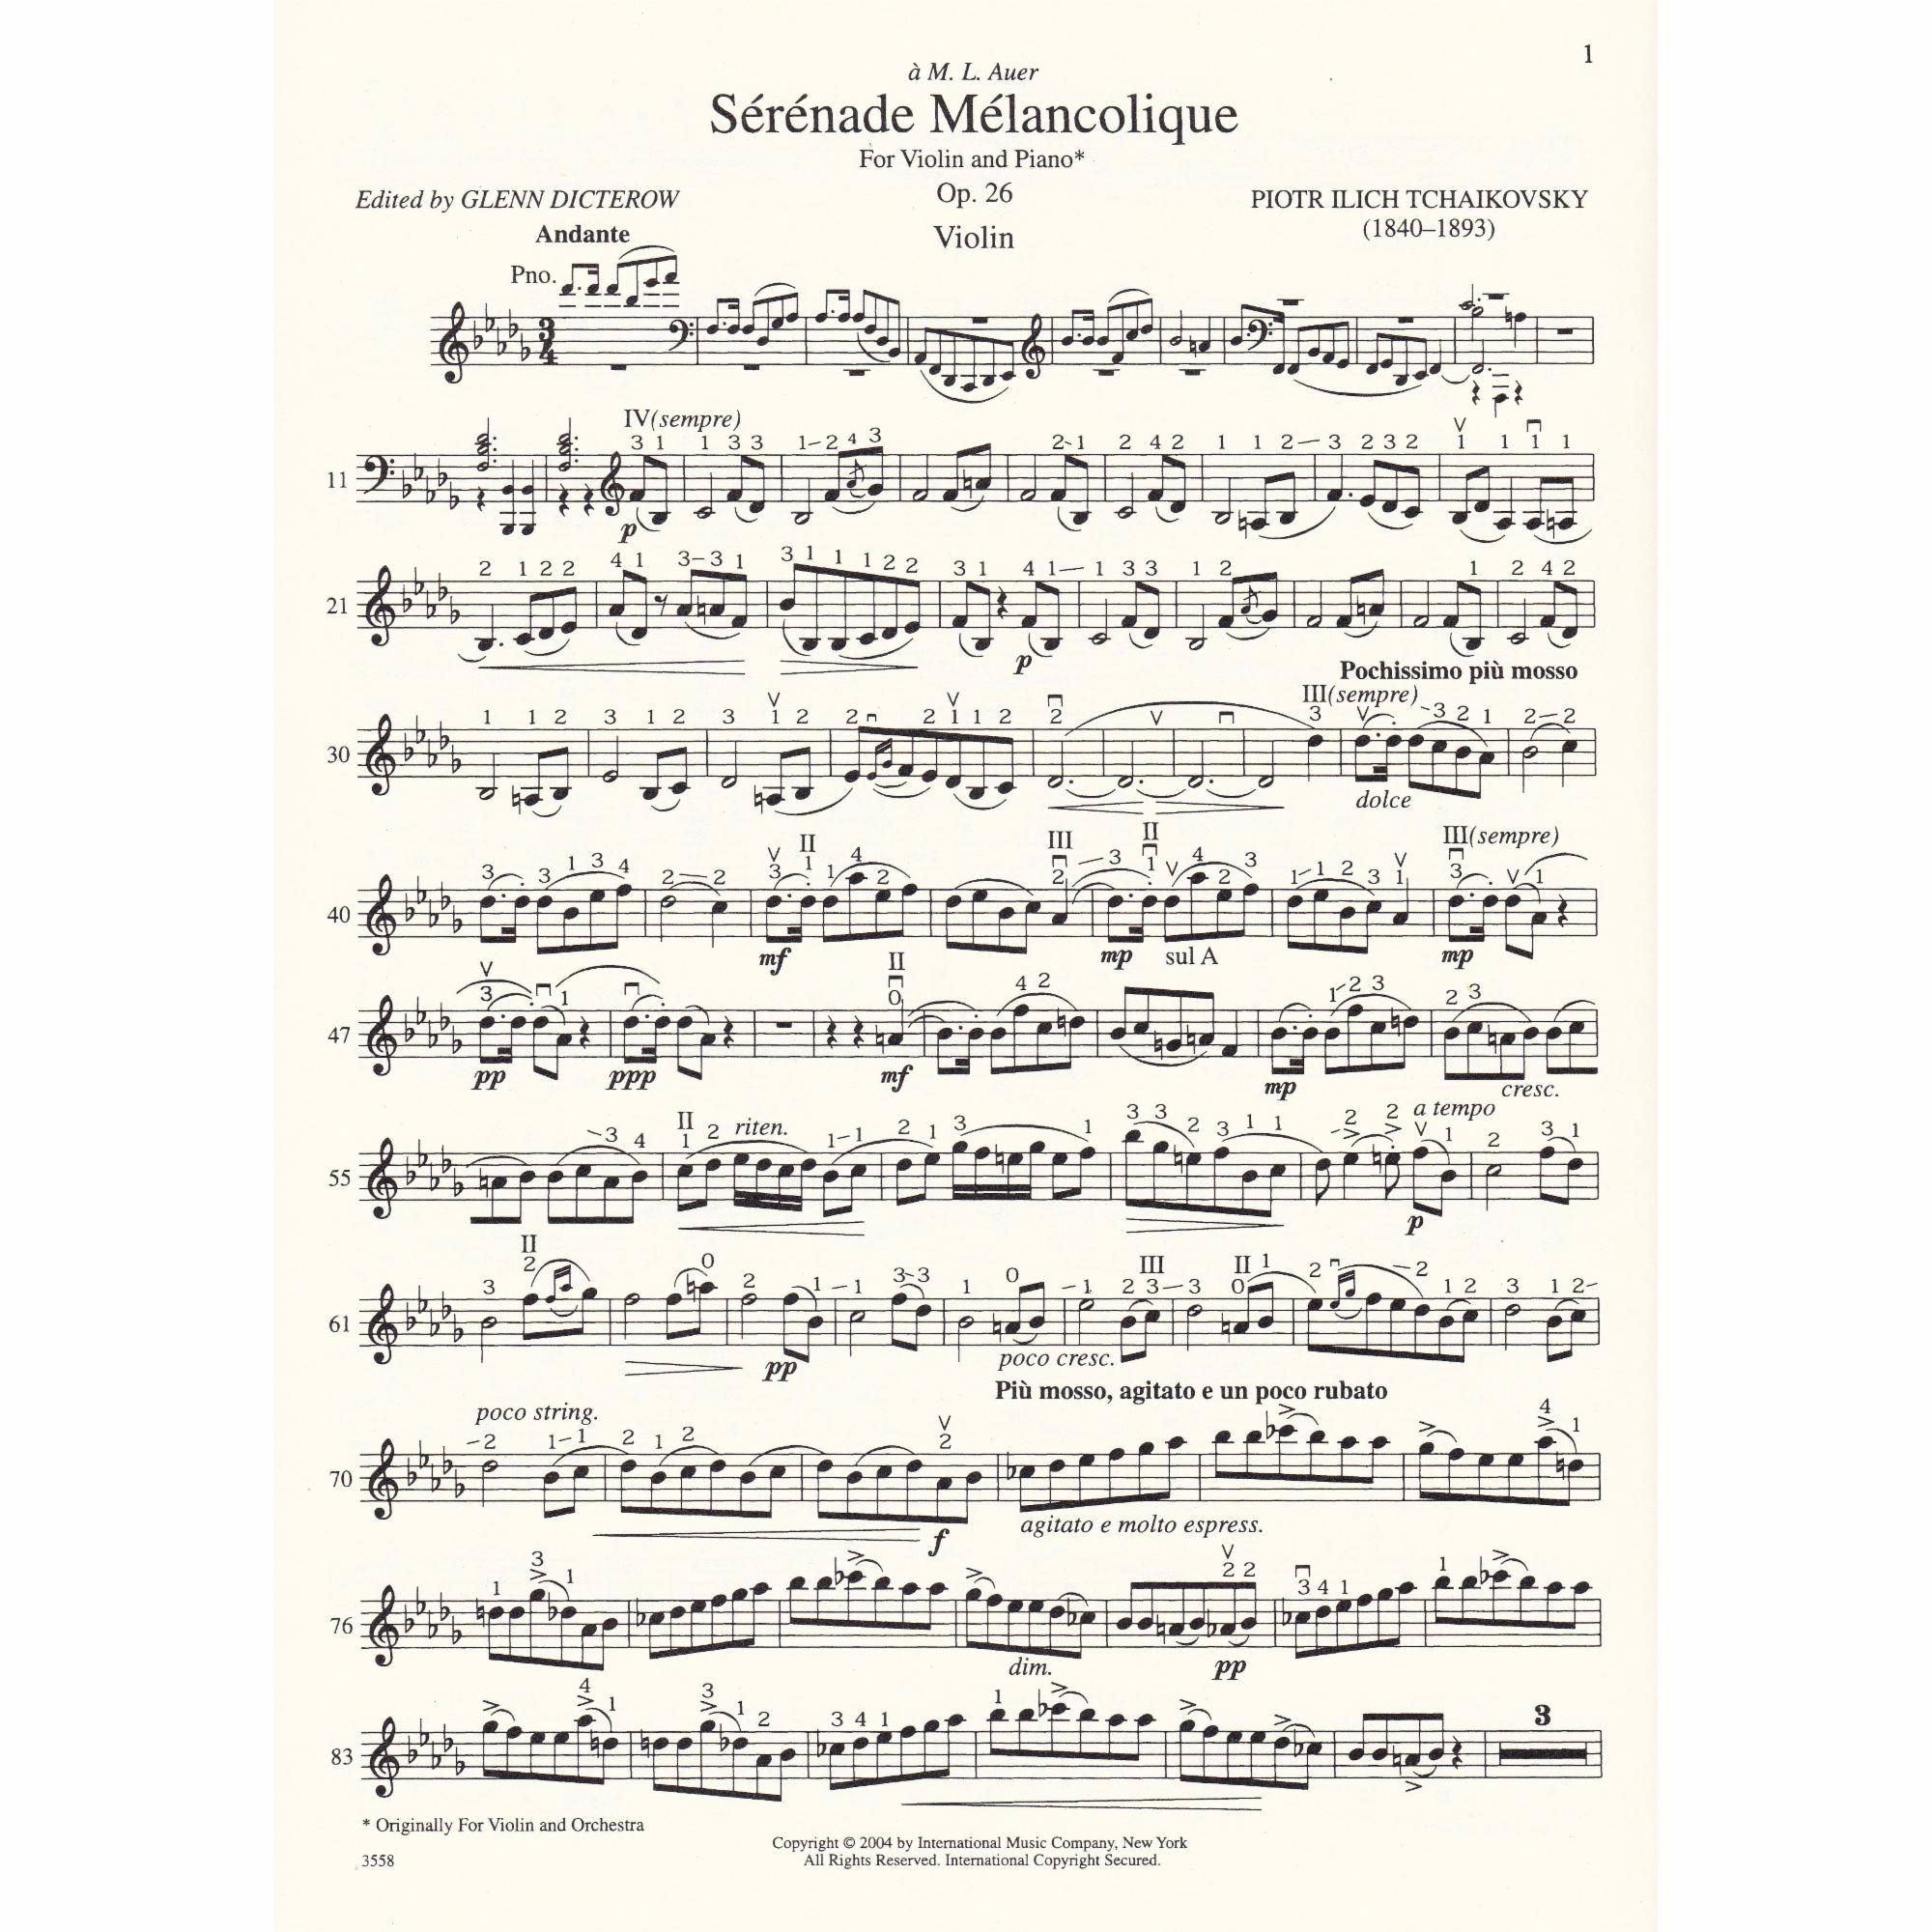 Serenade Melancolique for Violin and Piano, Op. 26